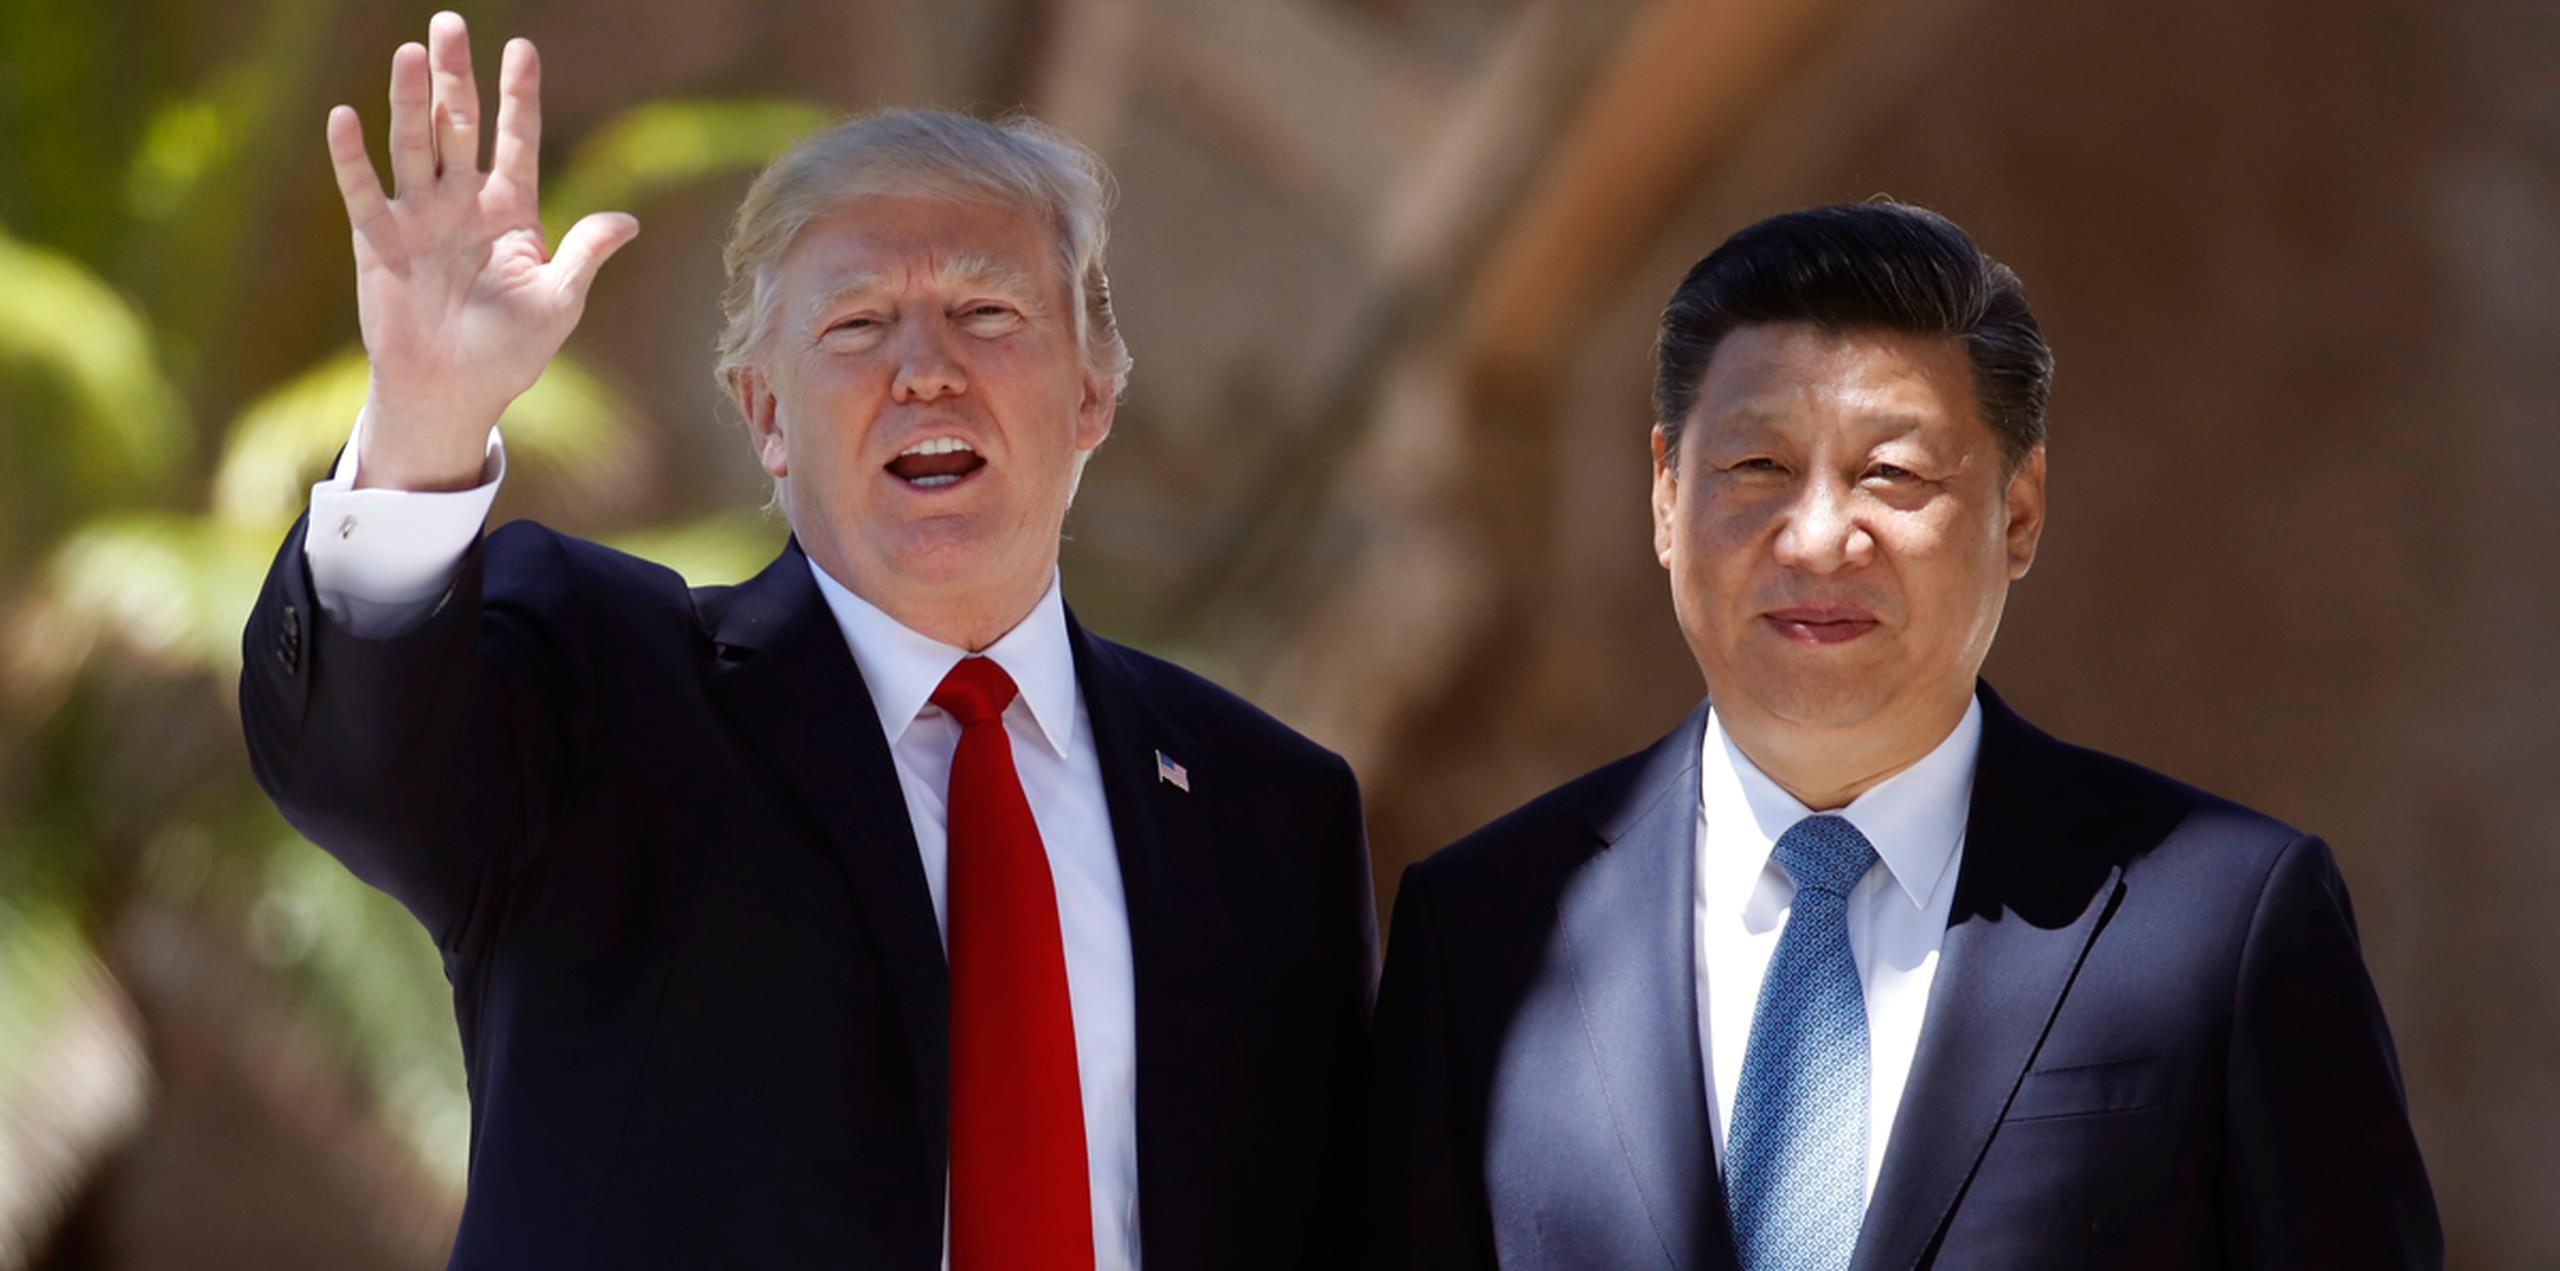 Según la televisora estatal CCTV, Xi dijo a Trump que China se opone firmemente al programa de armas nucleares de Corea del Norte. (AP)